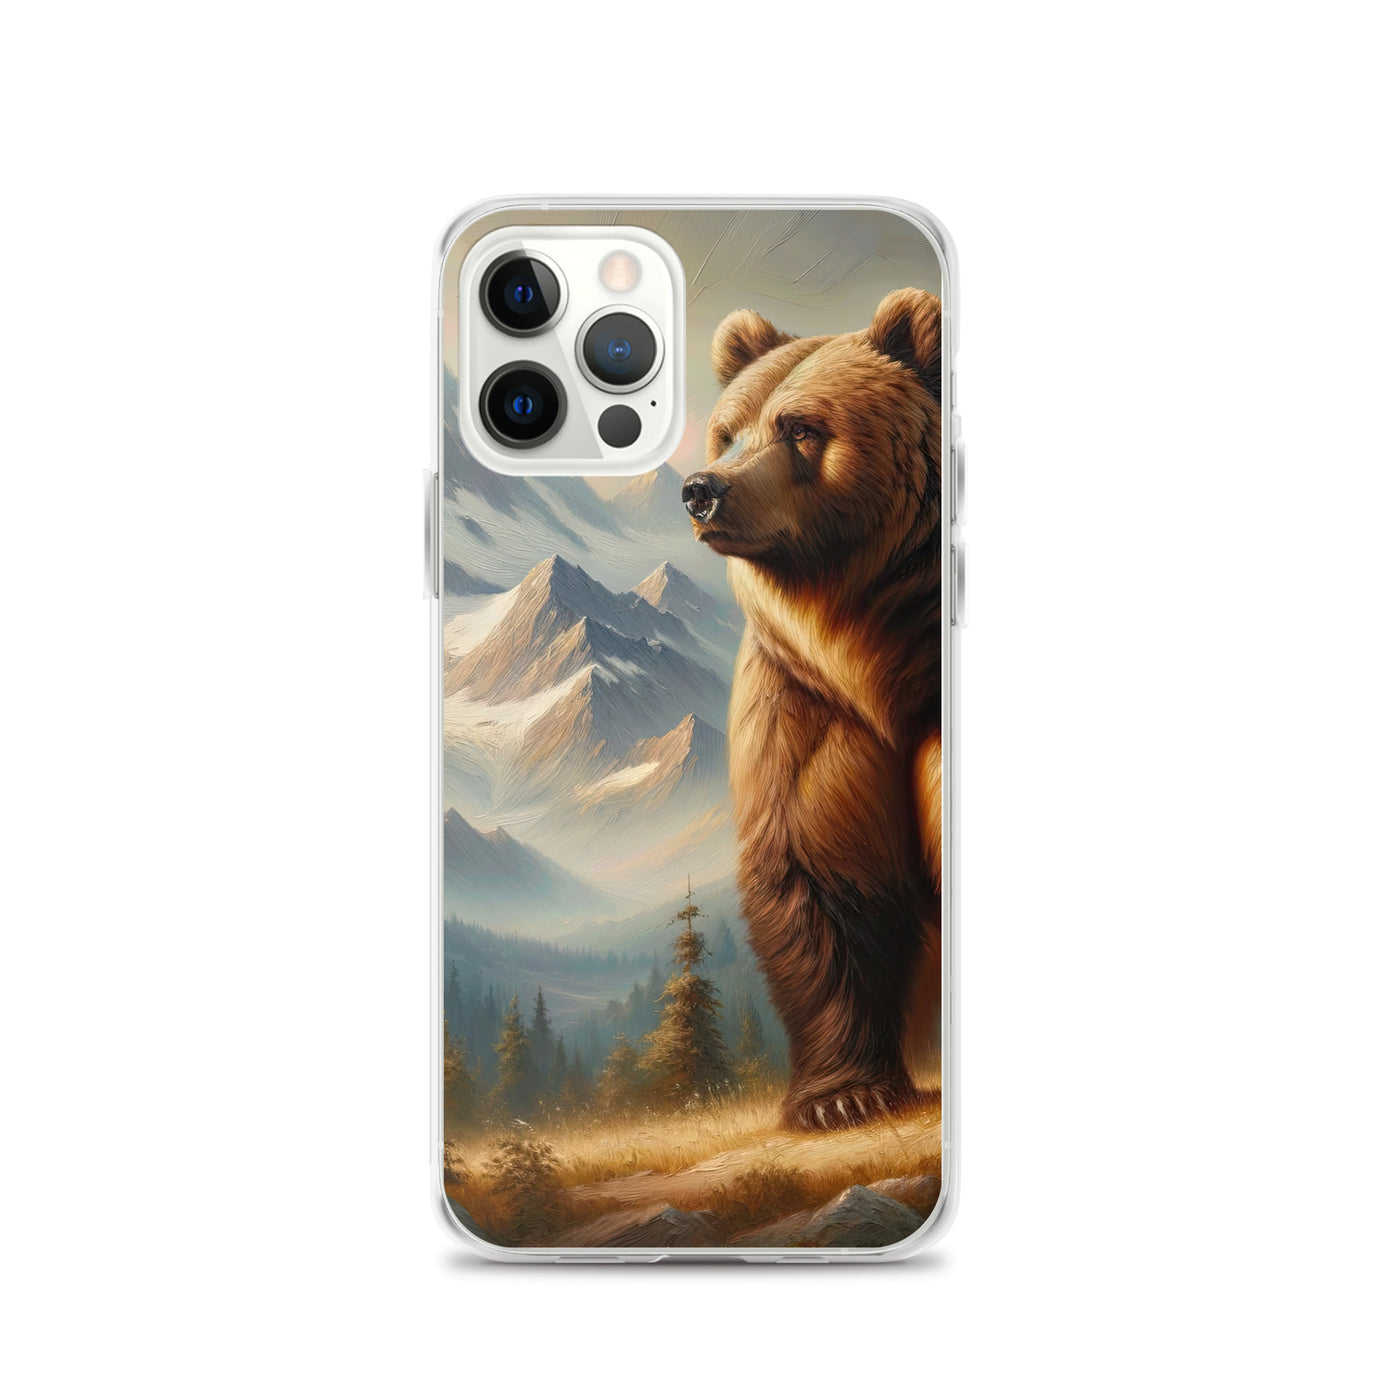 Ölgemälde eines königlichen Bären vor der majestätischen Alpenkulisse - iPhone Schutzhülle (durchsichtig) camping xxx yyy zzz iPhone 12 Pro